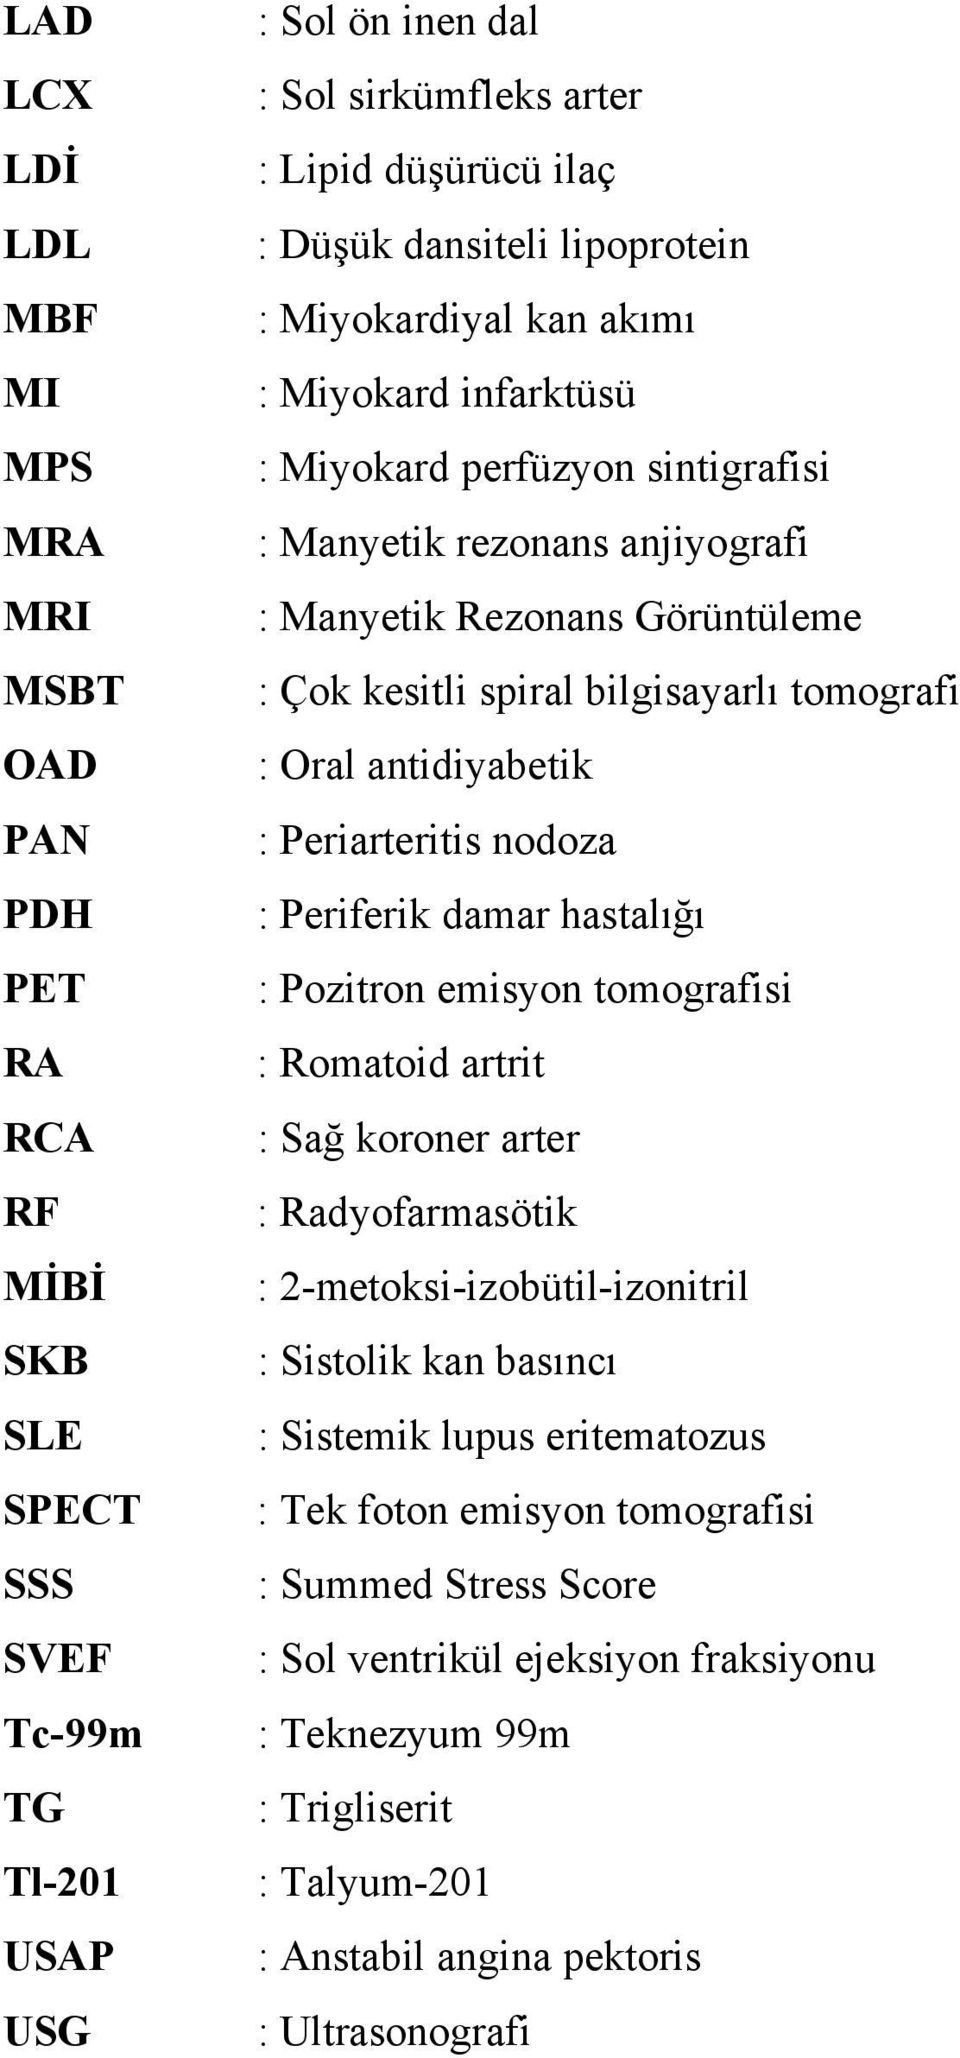 bilgisayarlı tomografi : Oral antidiyabetik : Periarteritis nodoza : Periferik damar hastalığı : Pozitron emisyon tomografisi : Romatoid artrit : Sağ koroner arter : Radyofarmasötik :